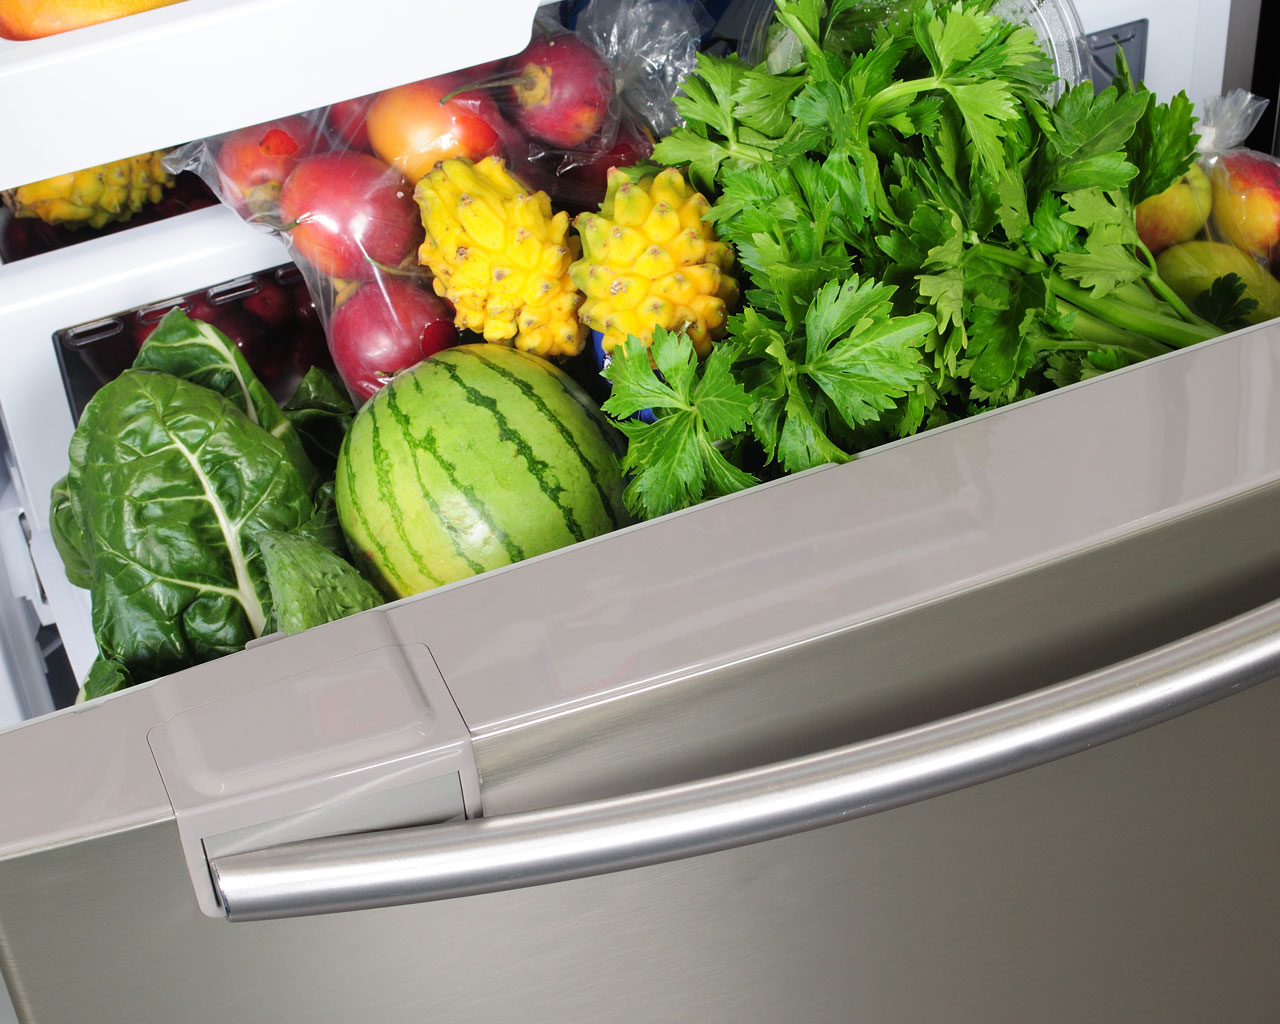 Des astuces naturelles pour éliminer les odeurs dans le réfrigérateur